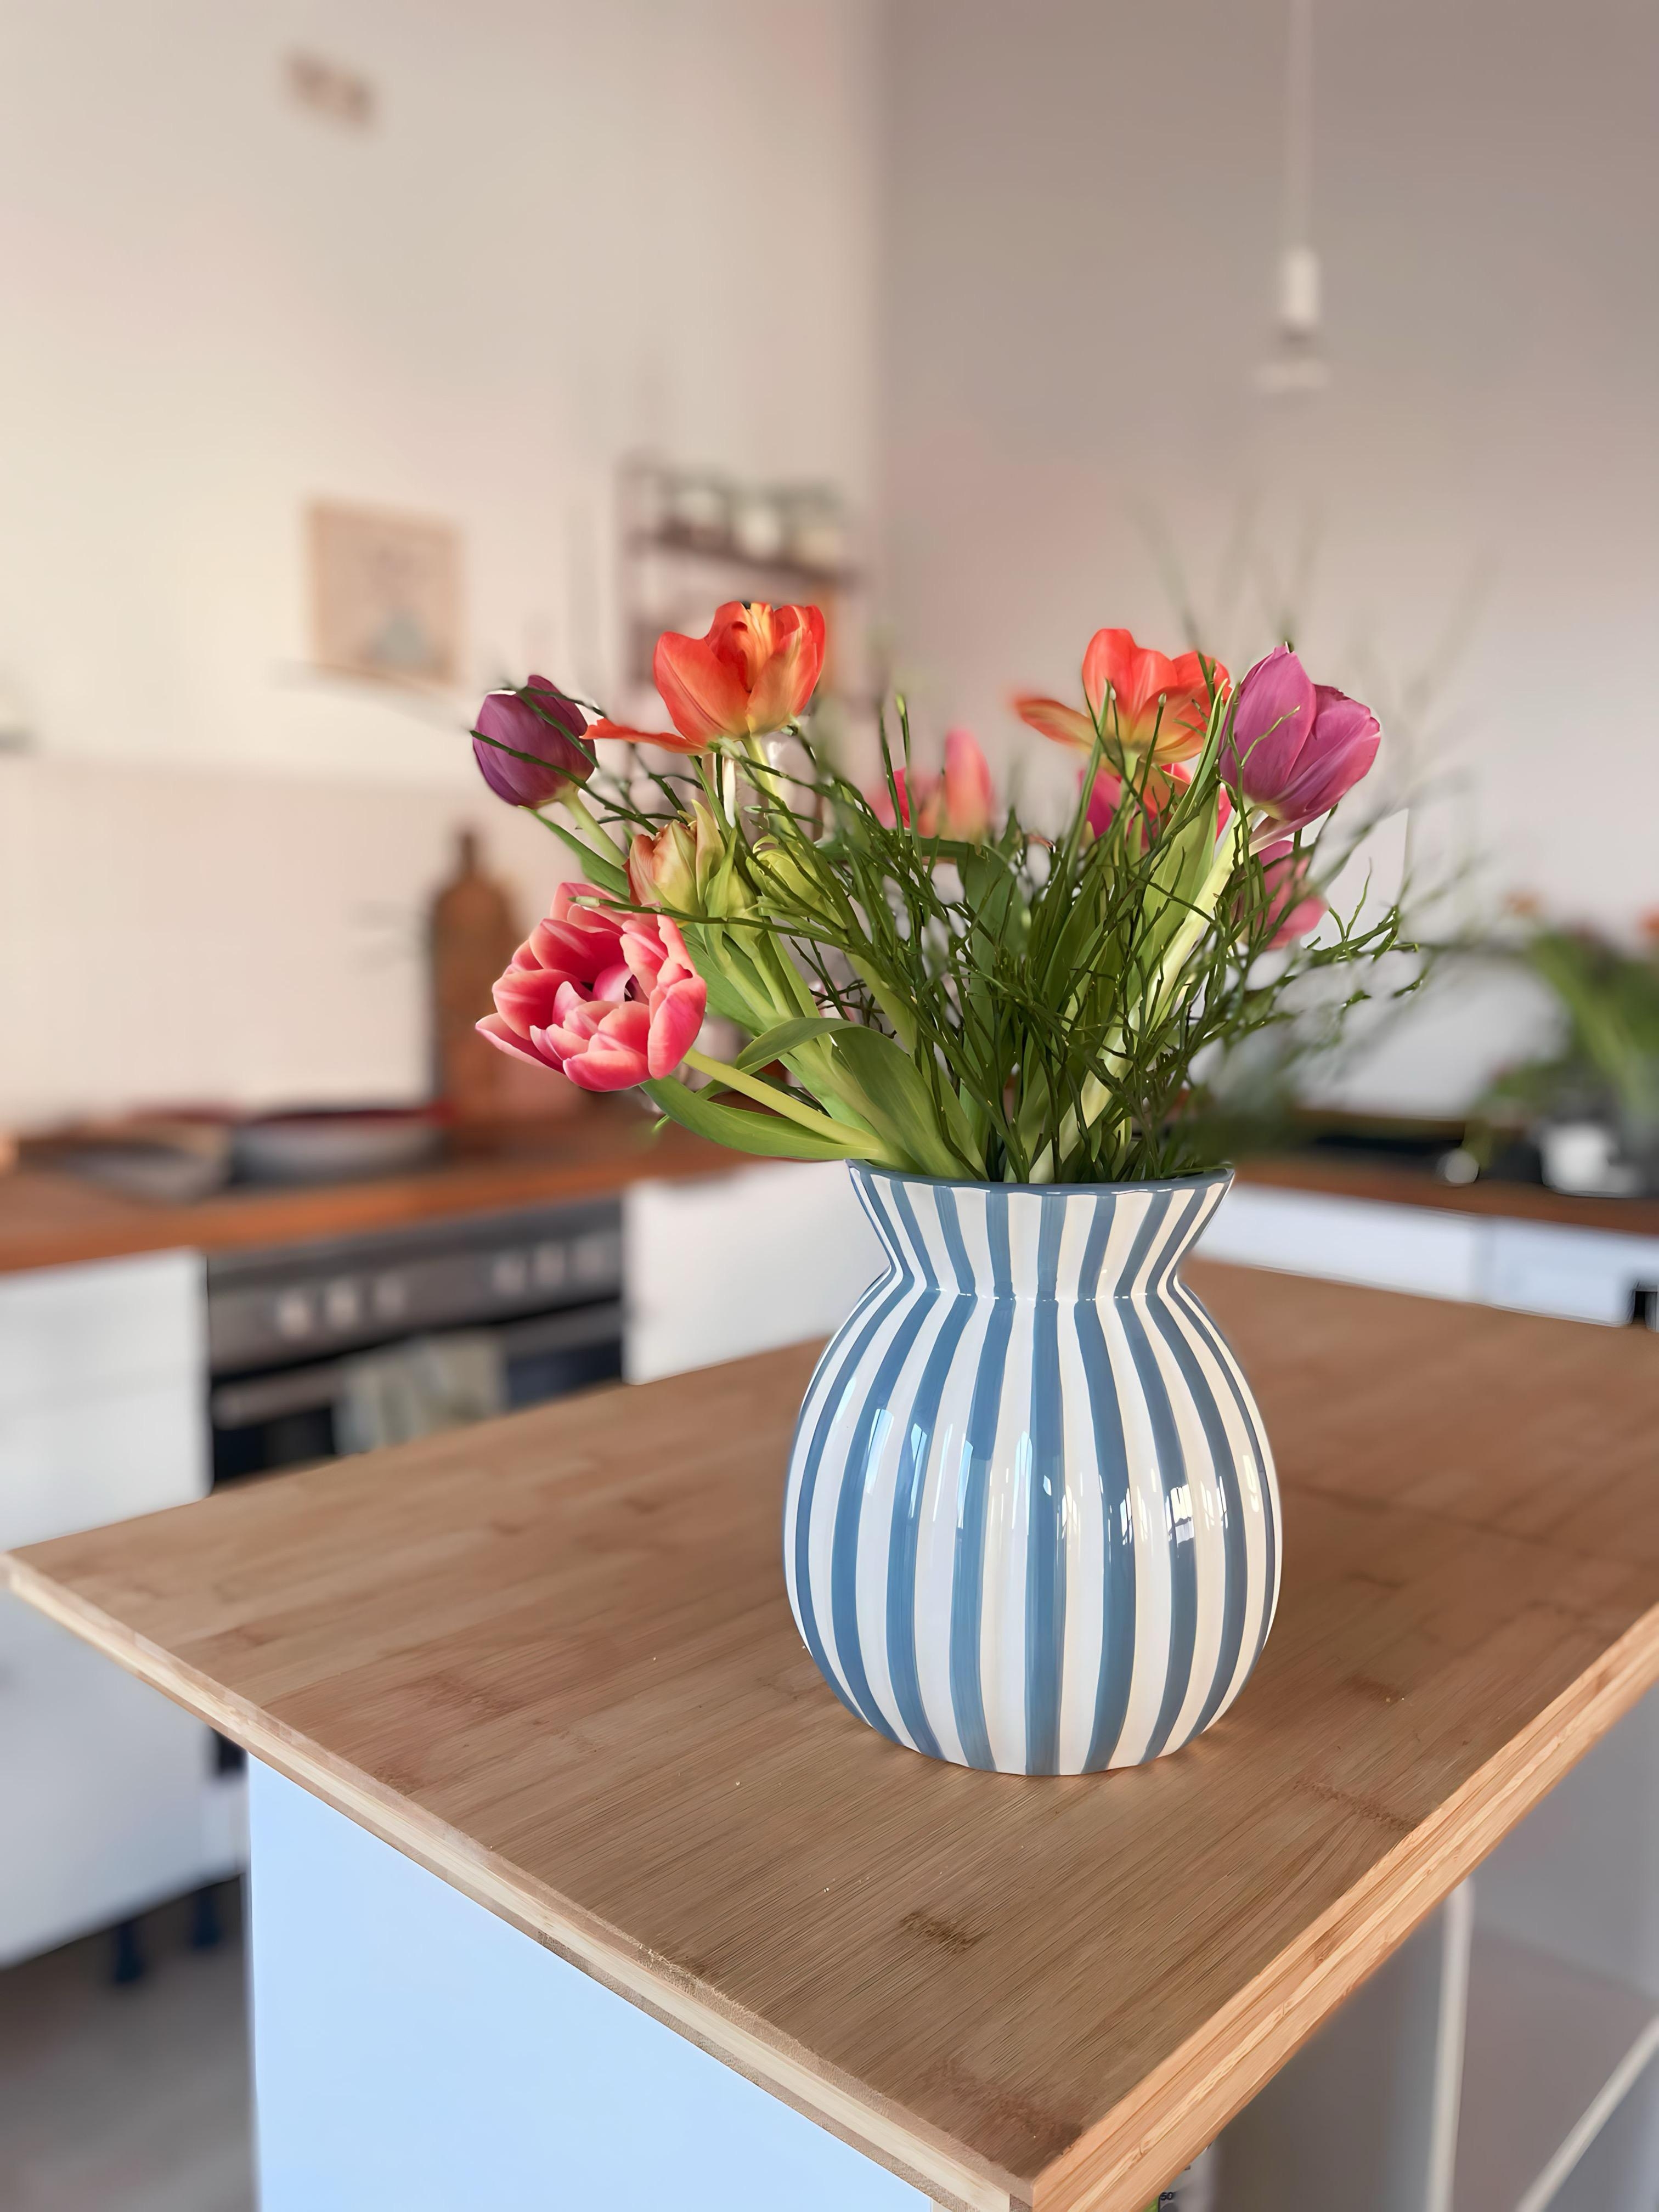 Hier herrscht absolute Tulpen und Vasenliebe! Bei euch so? 
#blumen#vase#hyggehome